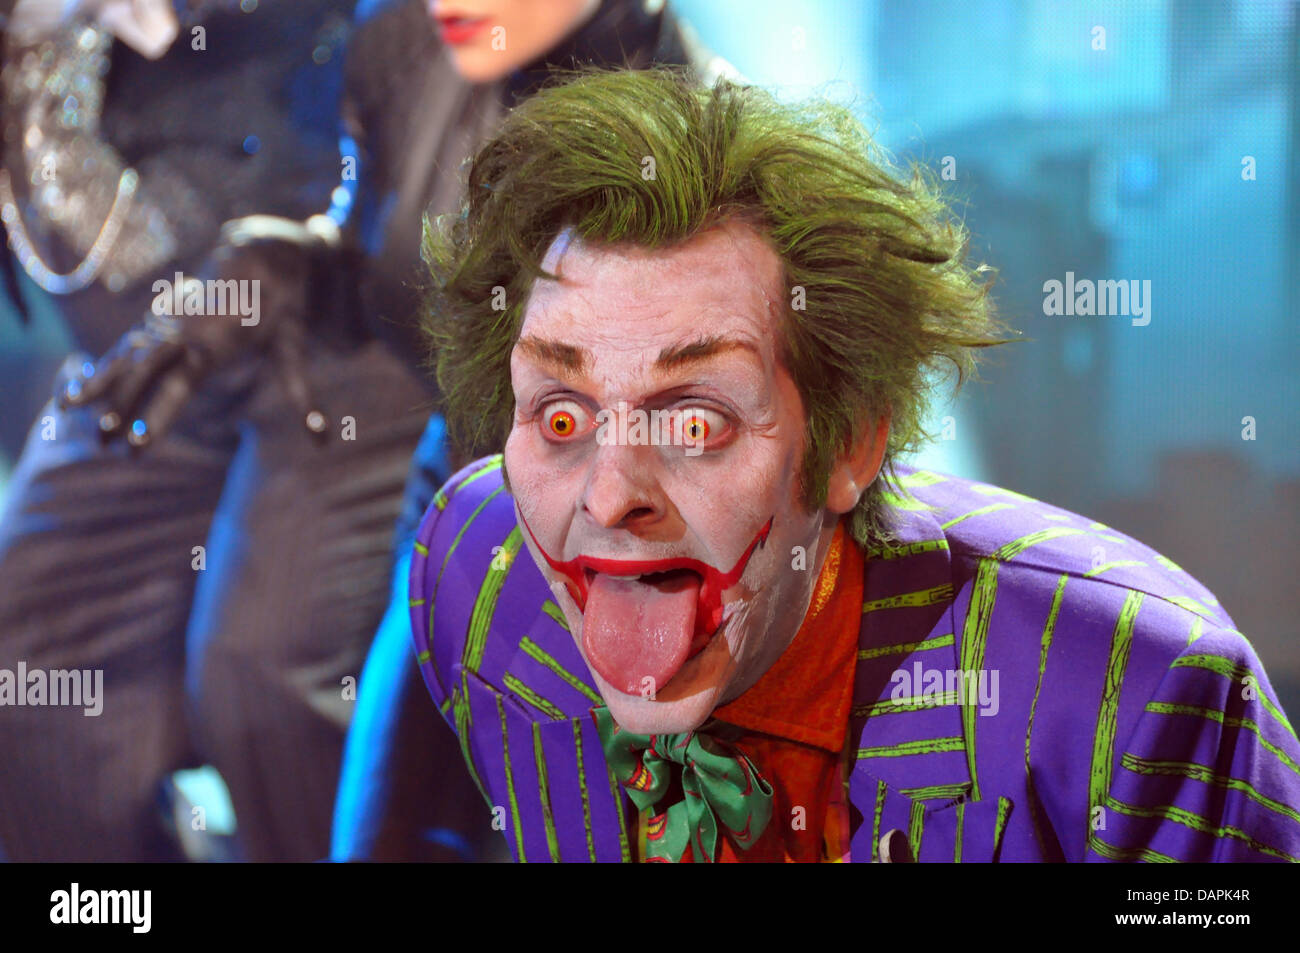 Der Schauspieler Garry See führt als Joker während einer Probe Foto von der Show-Produktion "Batman Live" in London, Großbritannien, 12. April 2011. Seit Jahrzehnten, die Batman gegen das Böse gekämpft hat, wird jetzt der Action-Held eine riesige Aktion Show gehören. "Batman Live" Sterne die Held in eine neue Live-Show, das am 24. August 2011 am O2 Arena in London uraufgeführt. Vom 11. Januar 2012, die sho Stockfoto